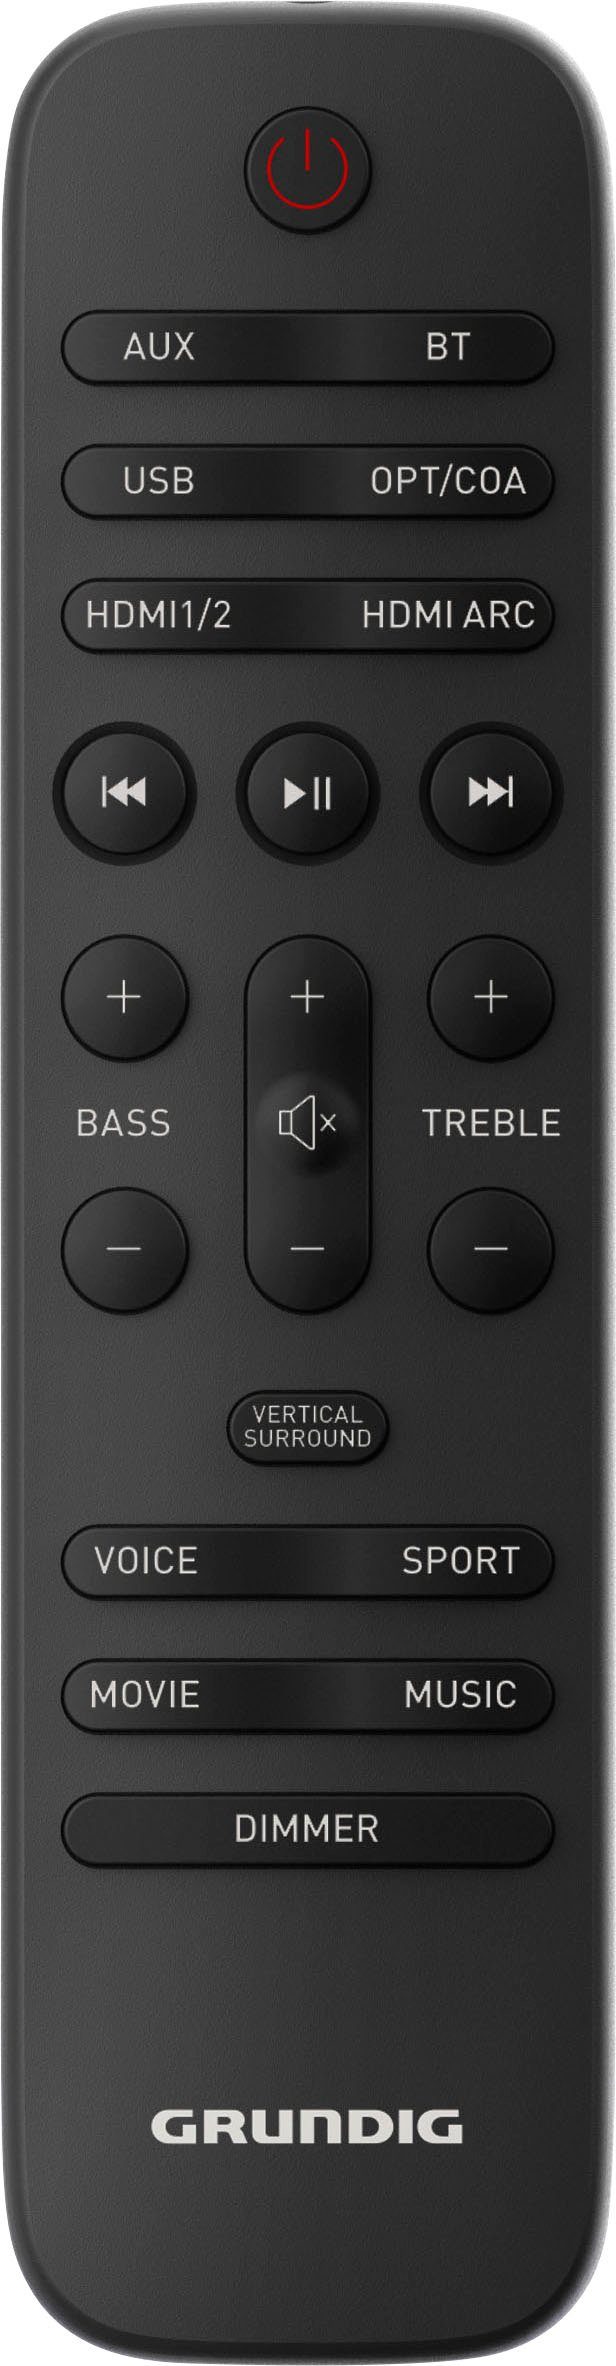 Grundig DSB 1000 All W) Atmos 120 in Dolby One Soundbar (Bluetooth